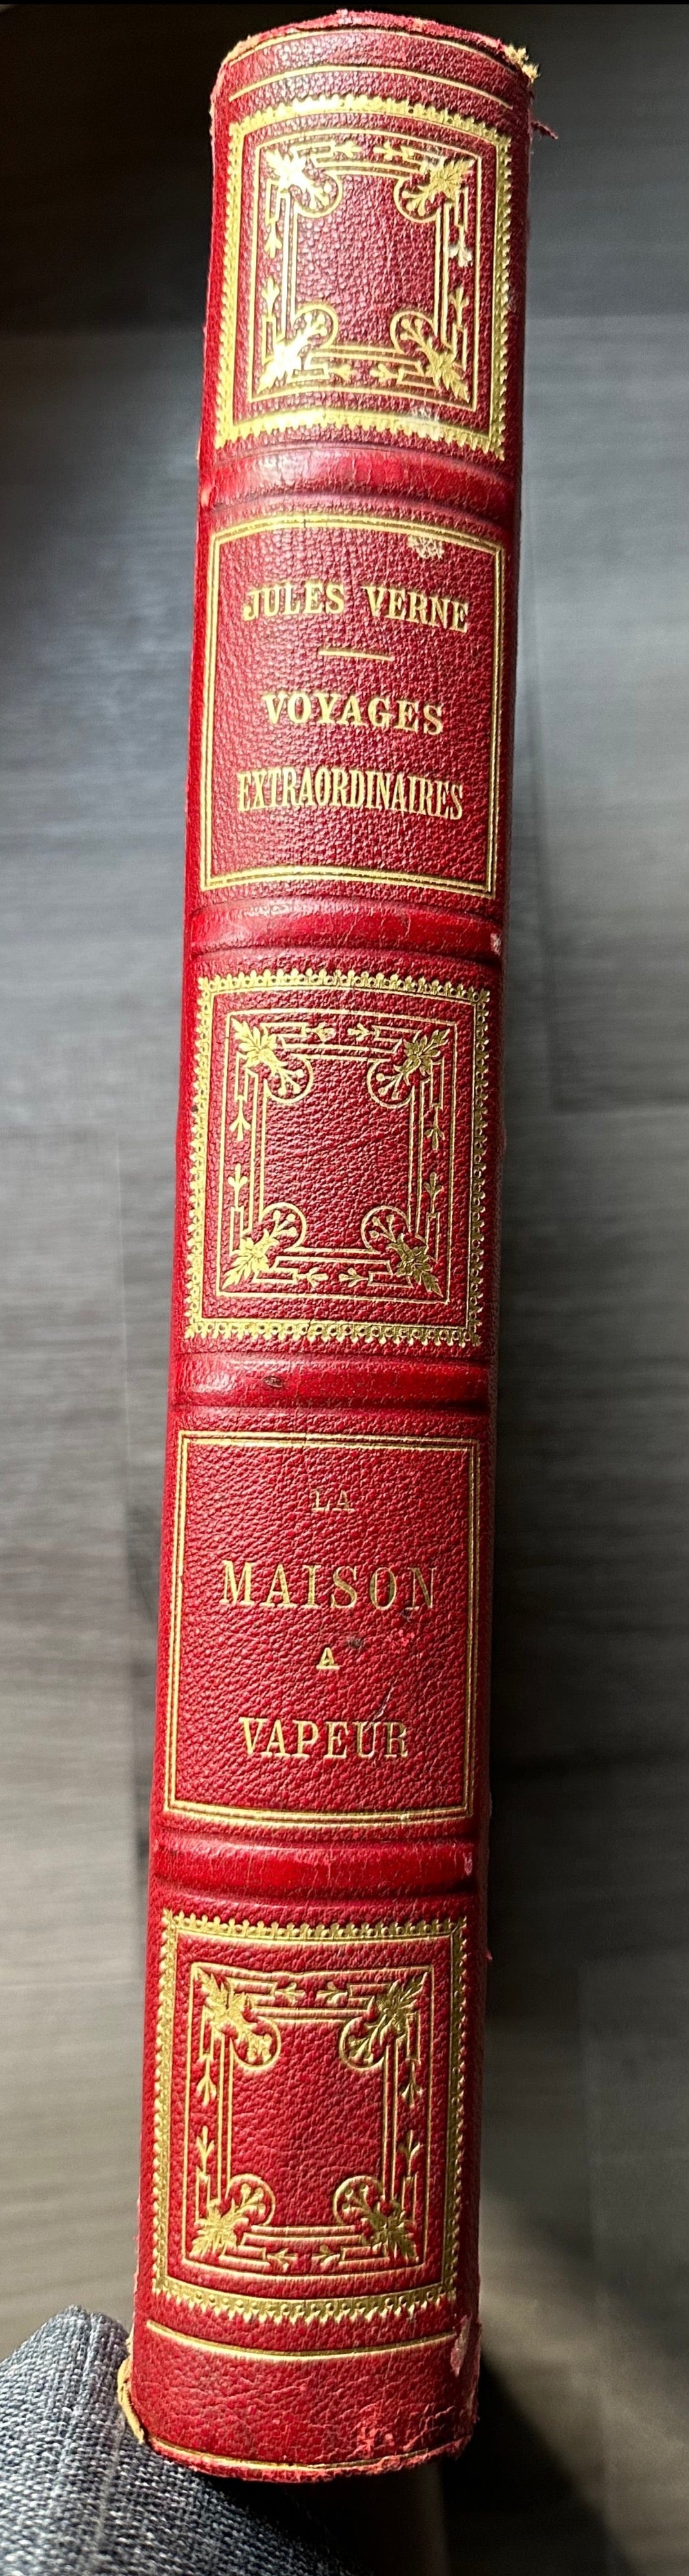 1880 La Maison A Vapor by Jules Verne